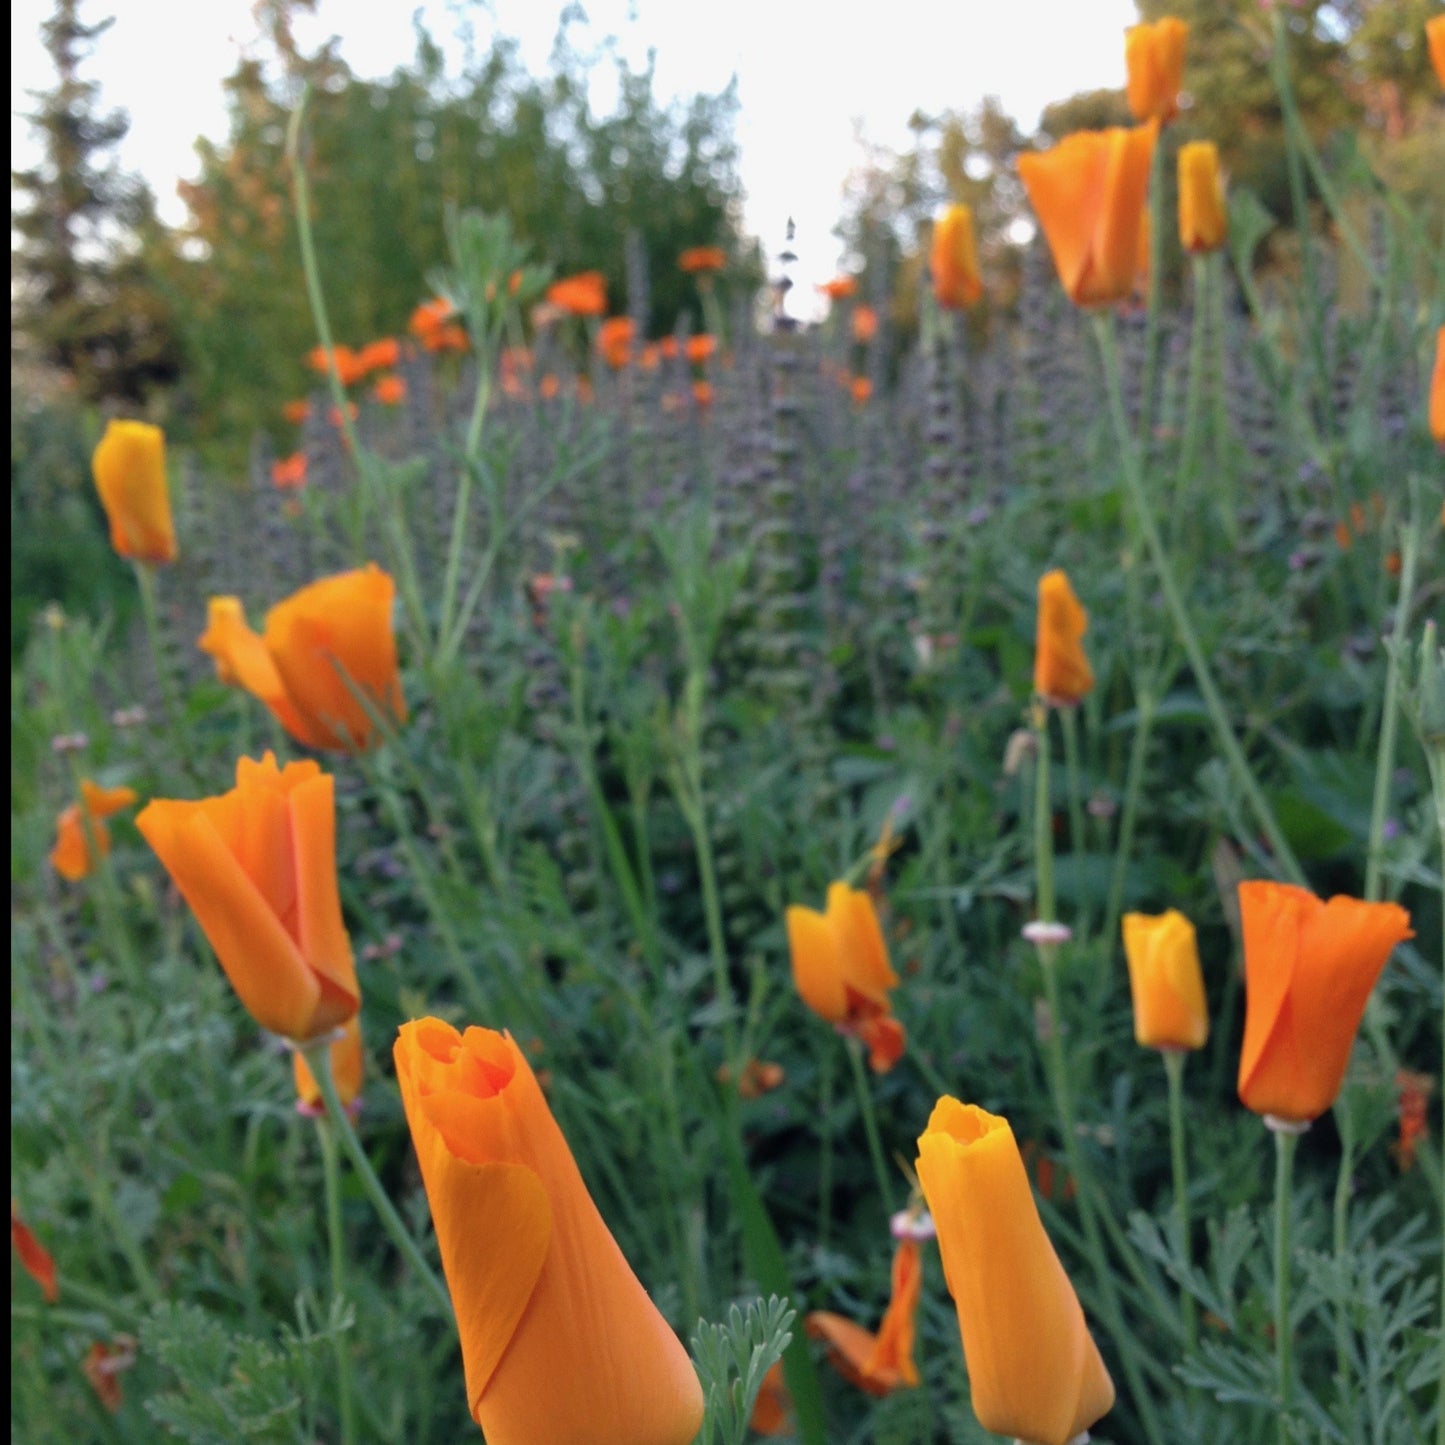 Poppy, California (Eschscholzia californica)